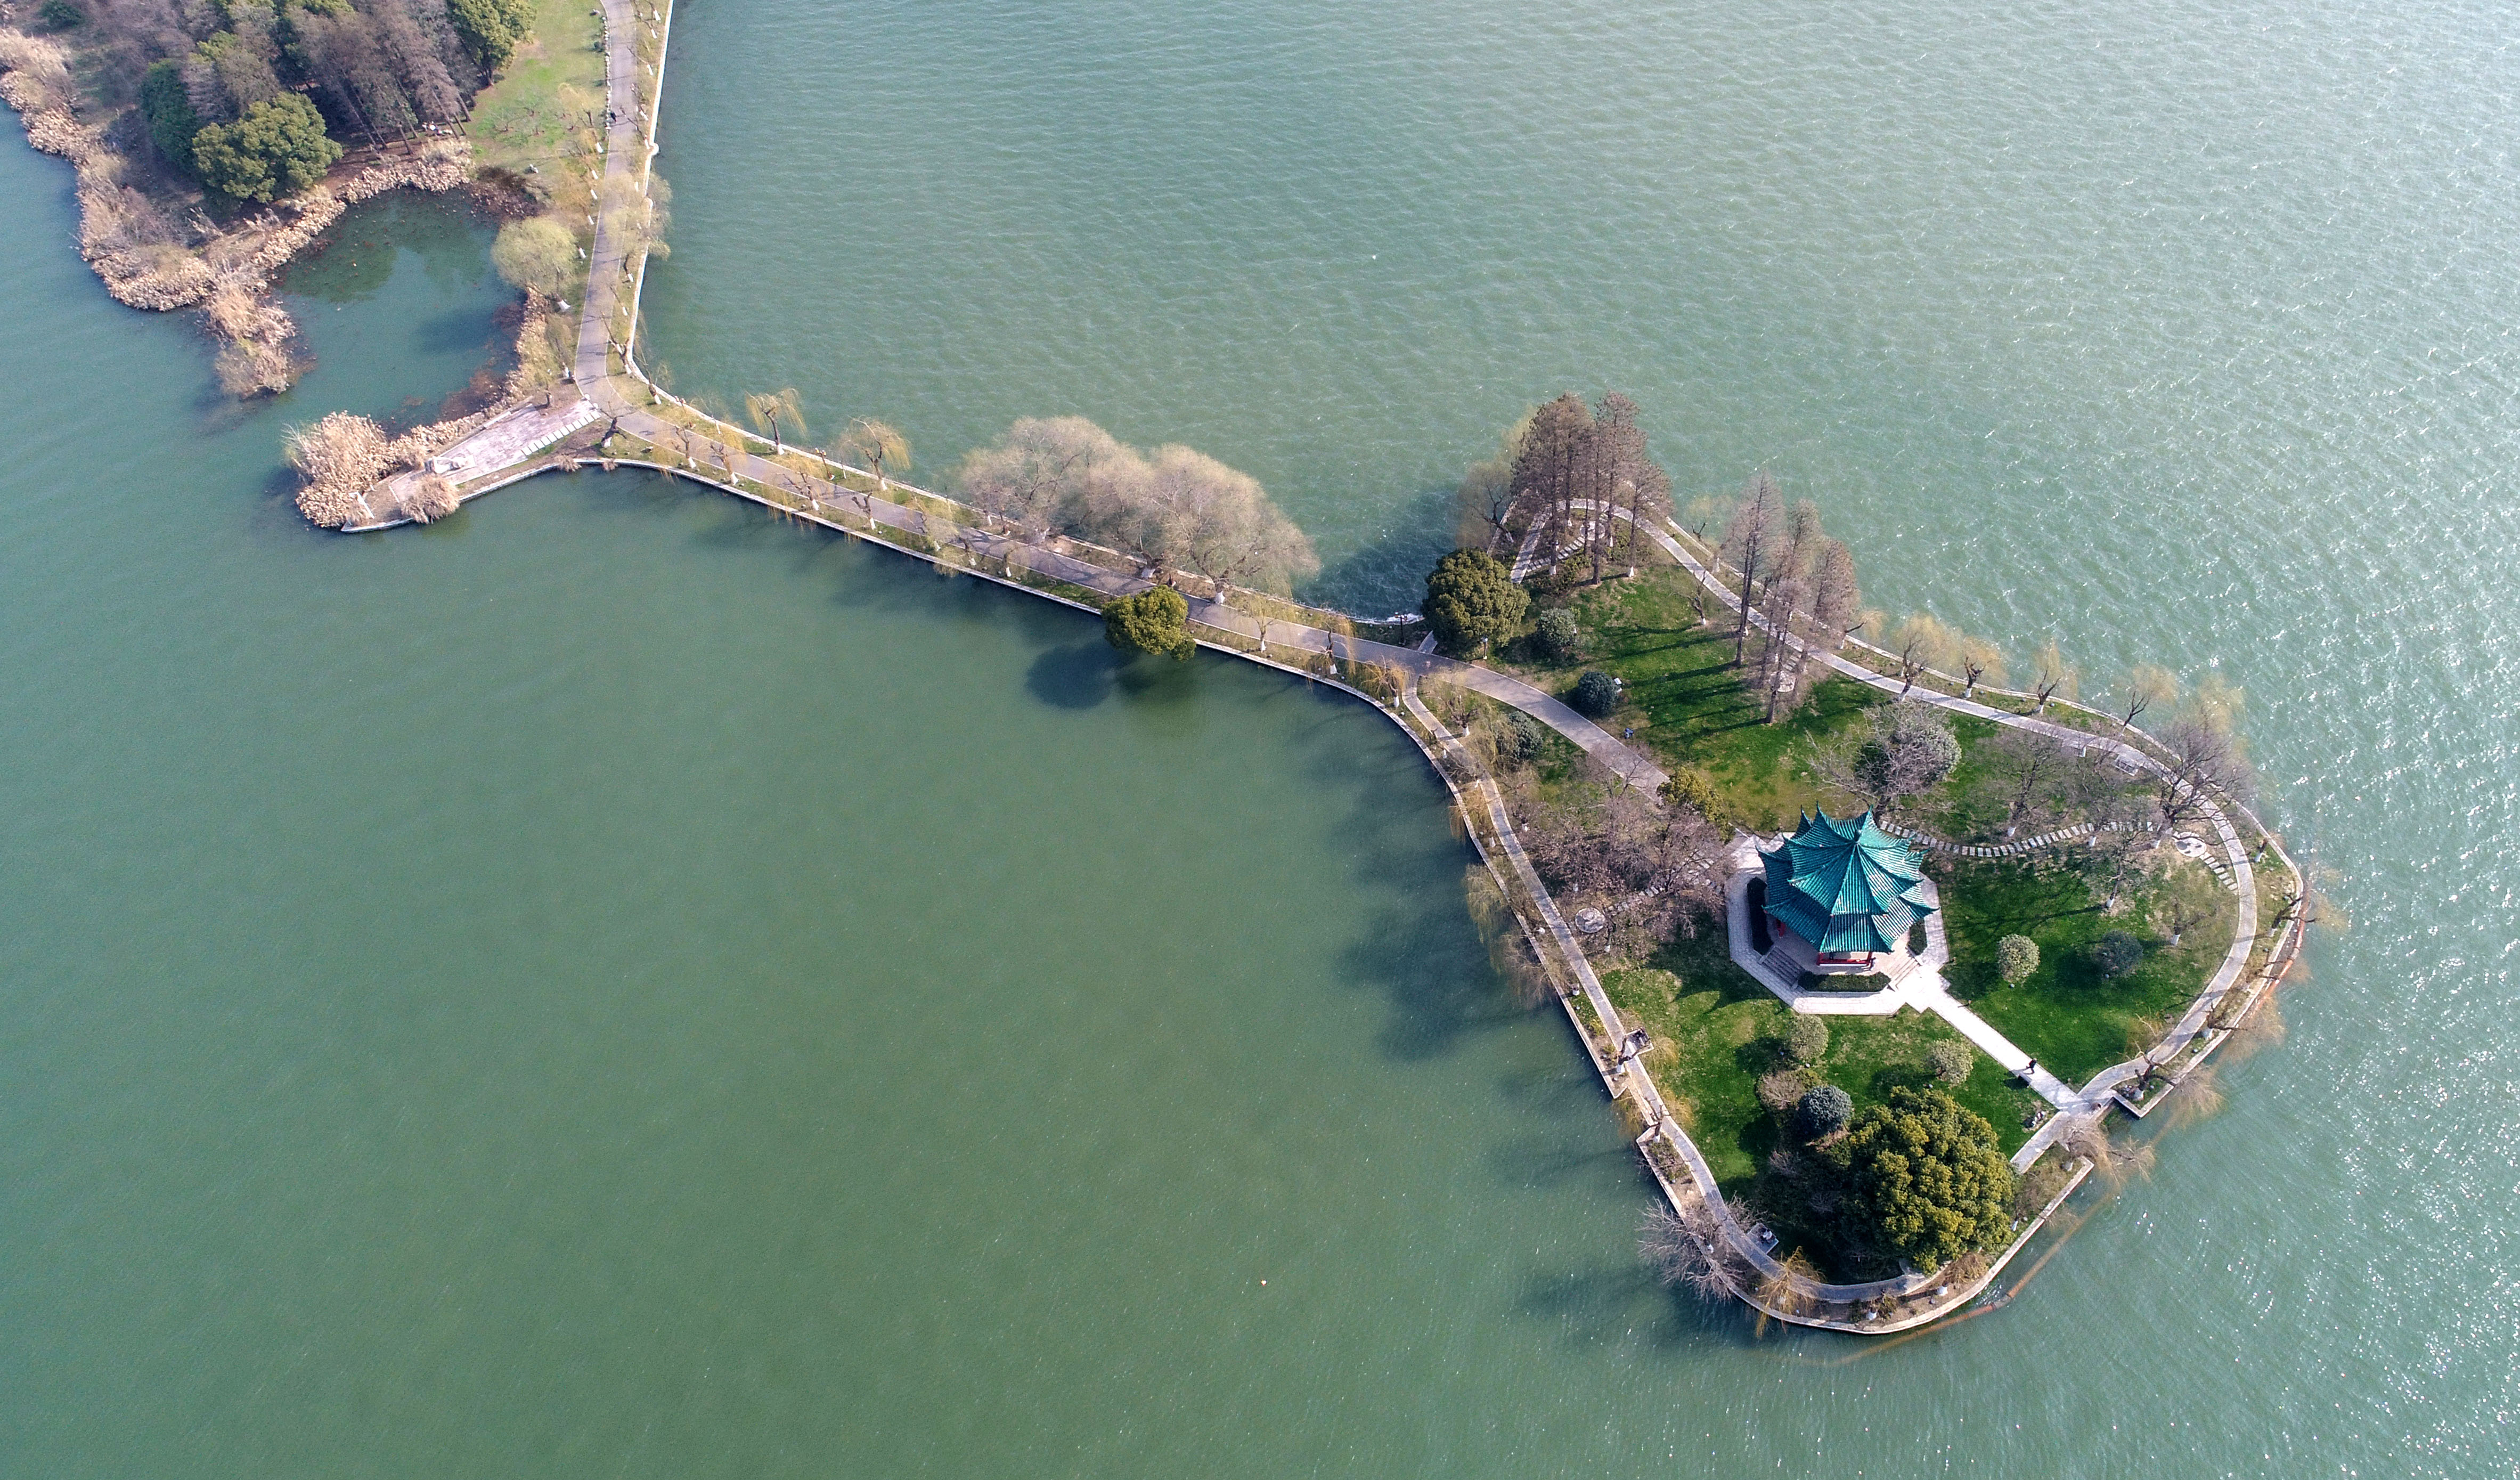 武汉东湖春天风景图片图片